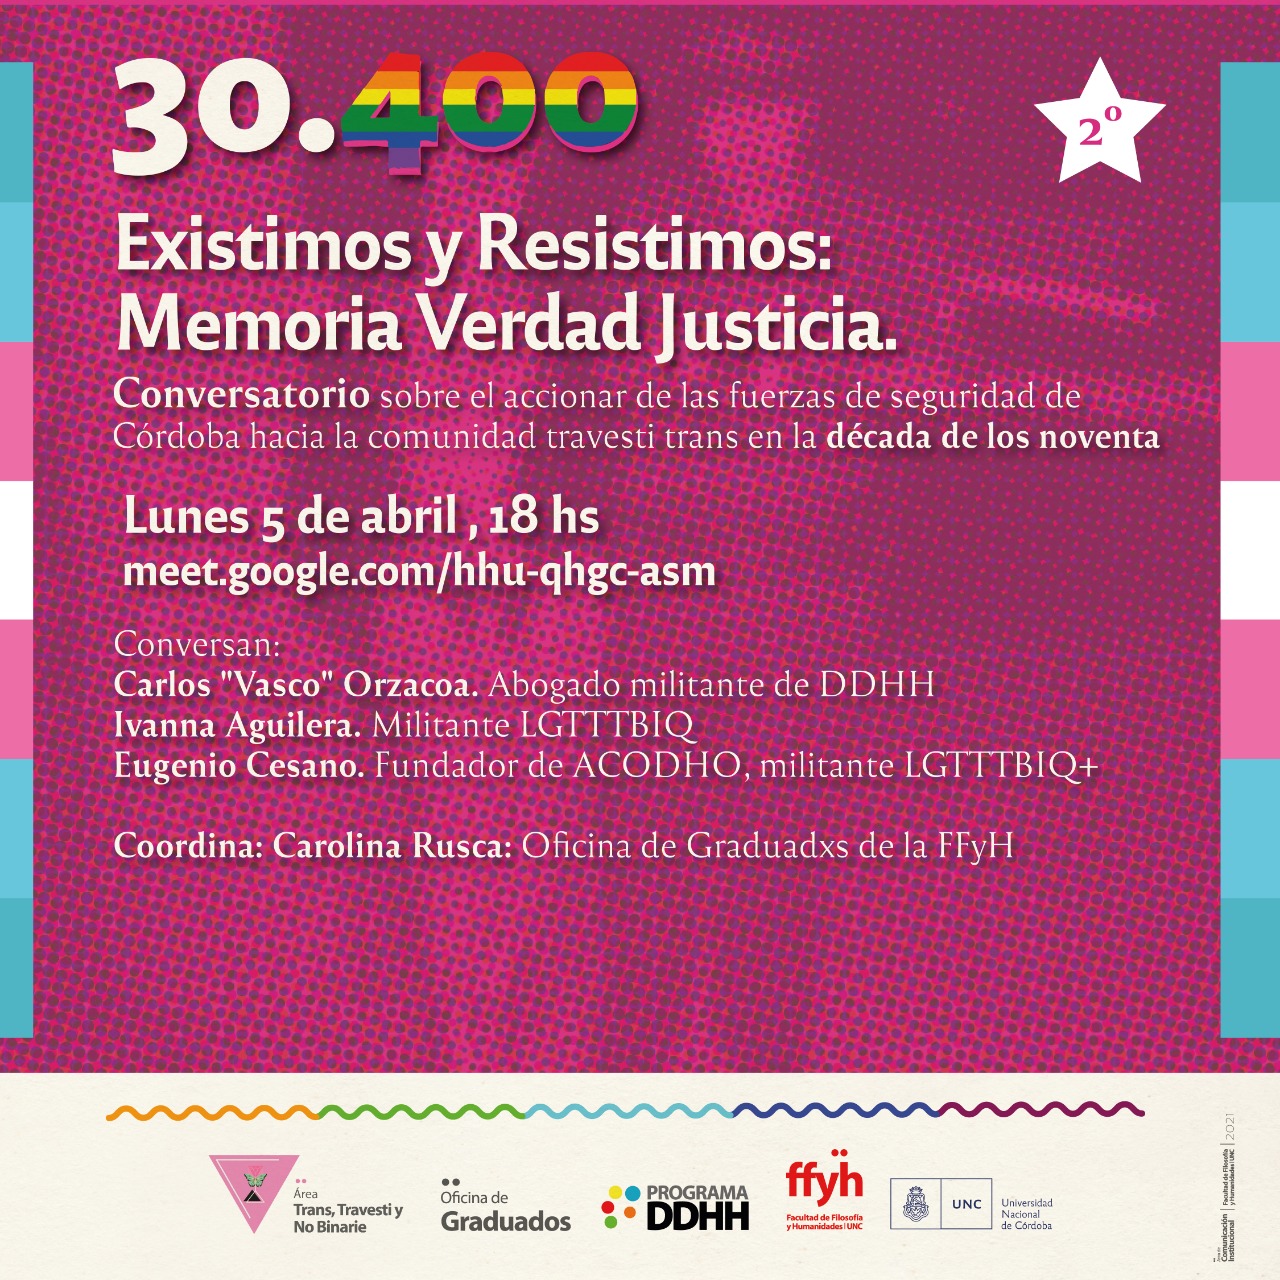 30.400 Existimos y Resistimos. Conversatorio sobre el accionar de las fuerzas de seguridad de Córdoba hacia la comunidad travesti trans en la década de los noventa